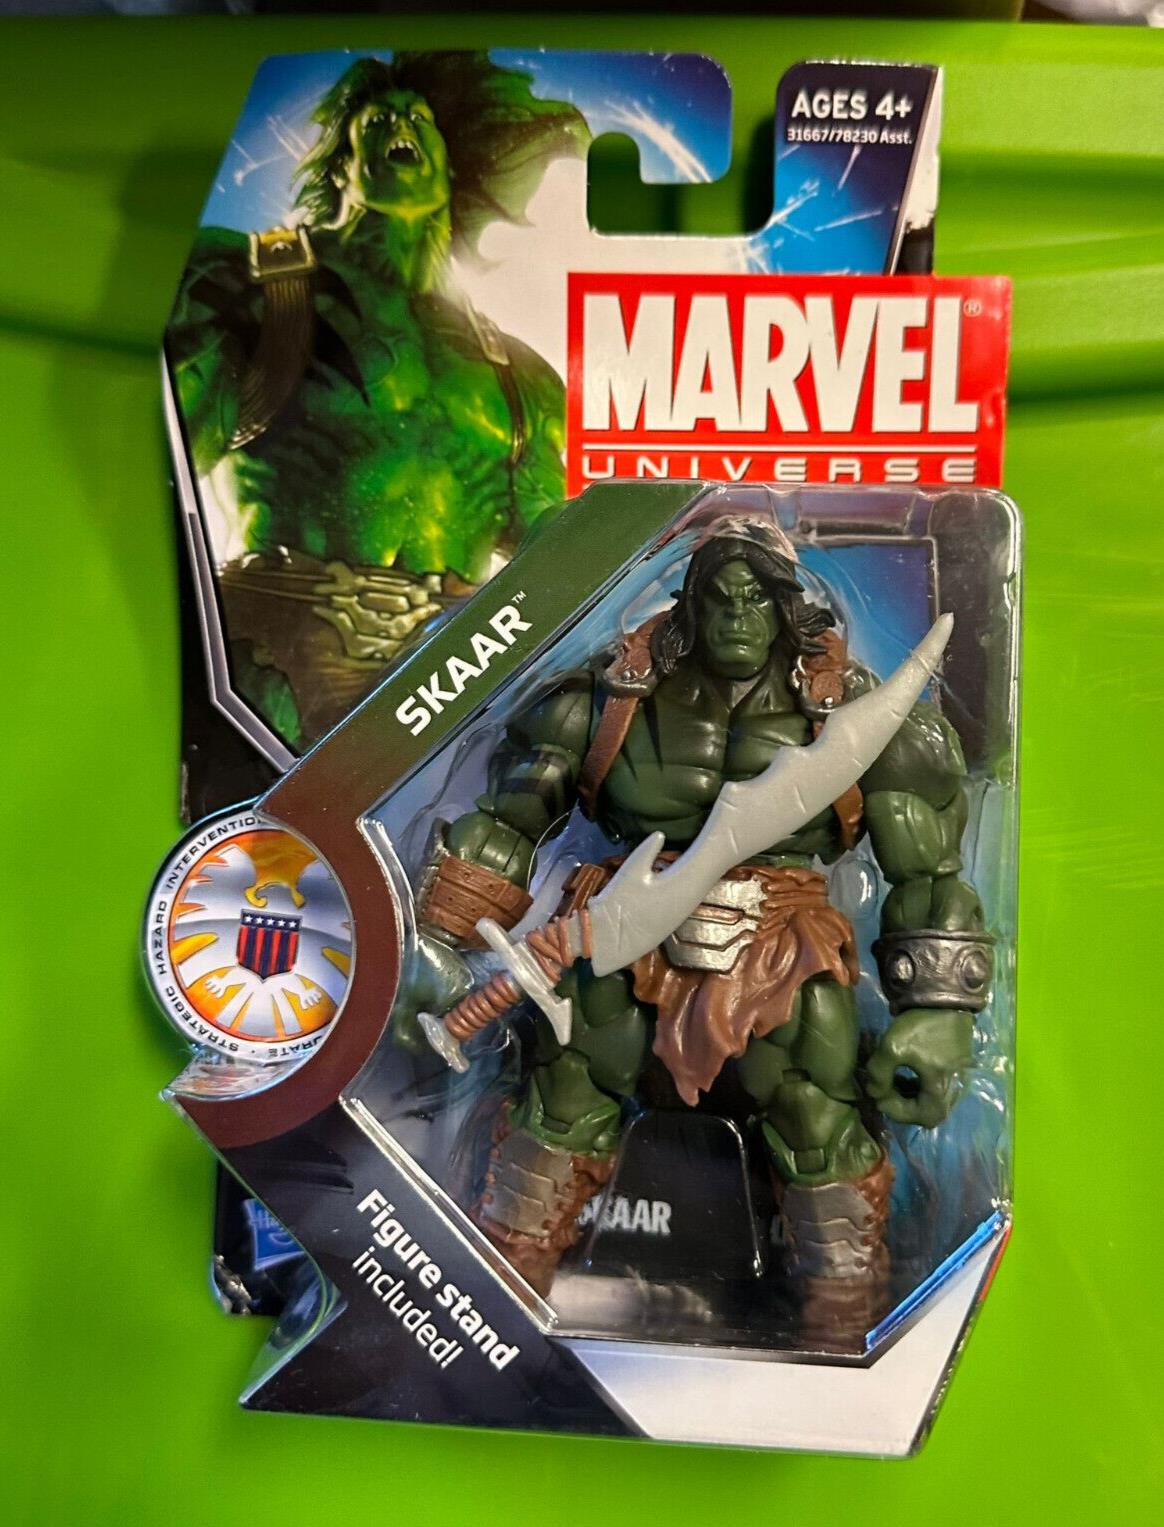 Skaar Son Of Hulk 016 Marvel Universe Series 3 3.75" Figure New 2010 Hasbro #2